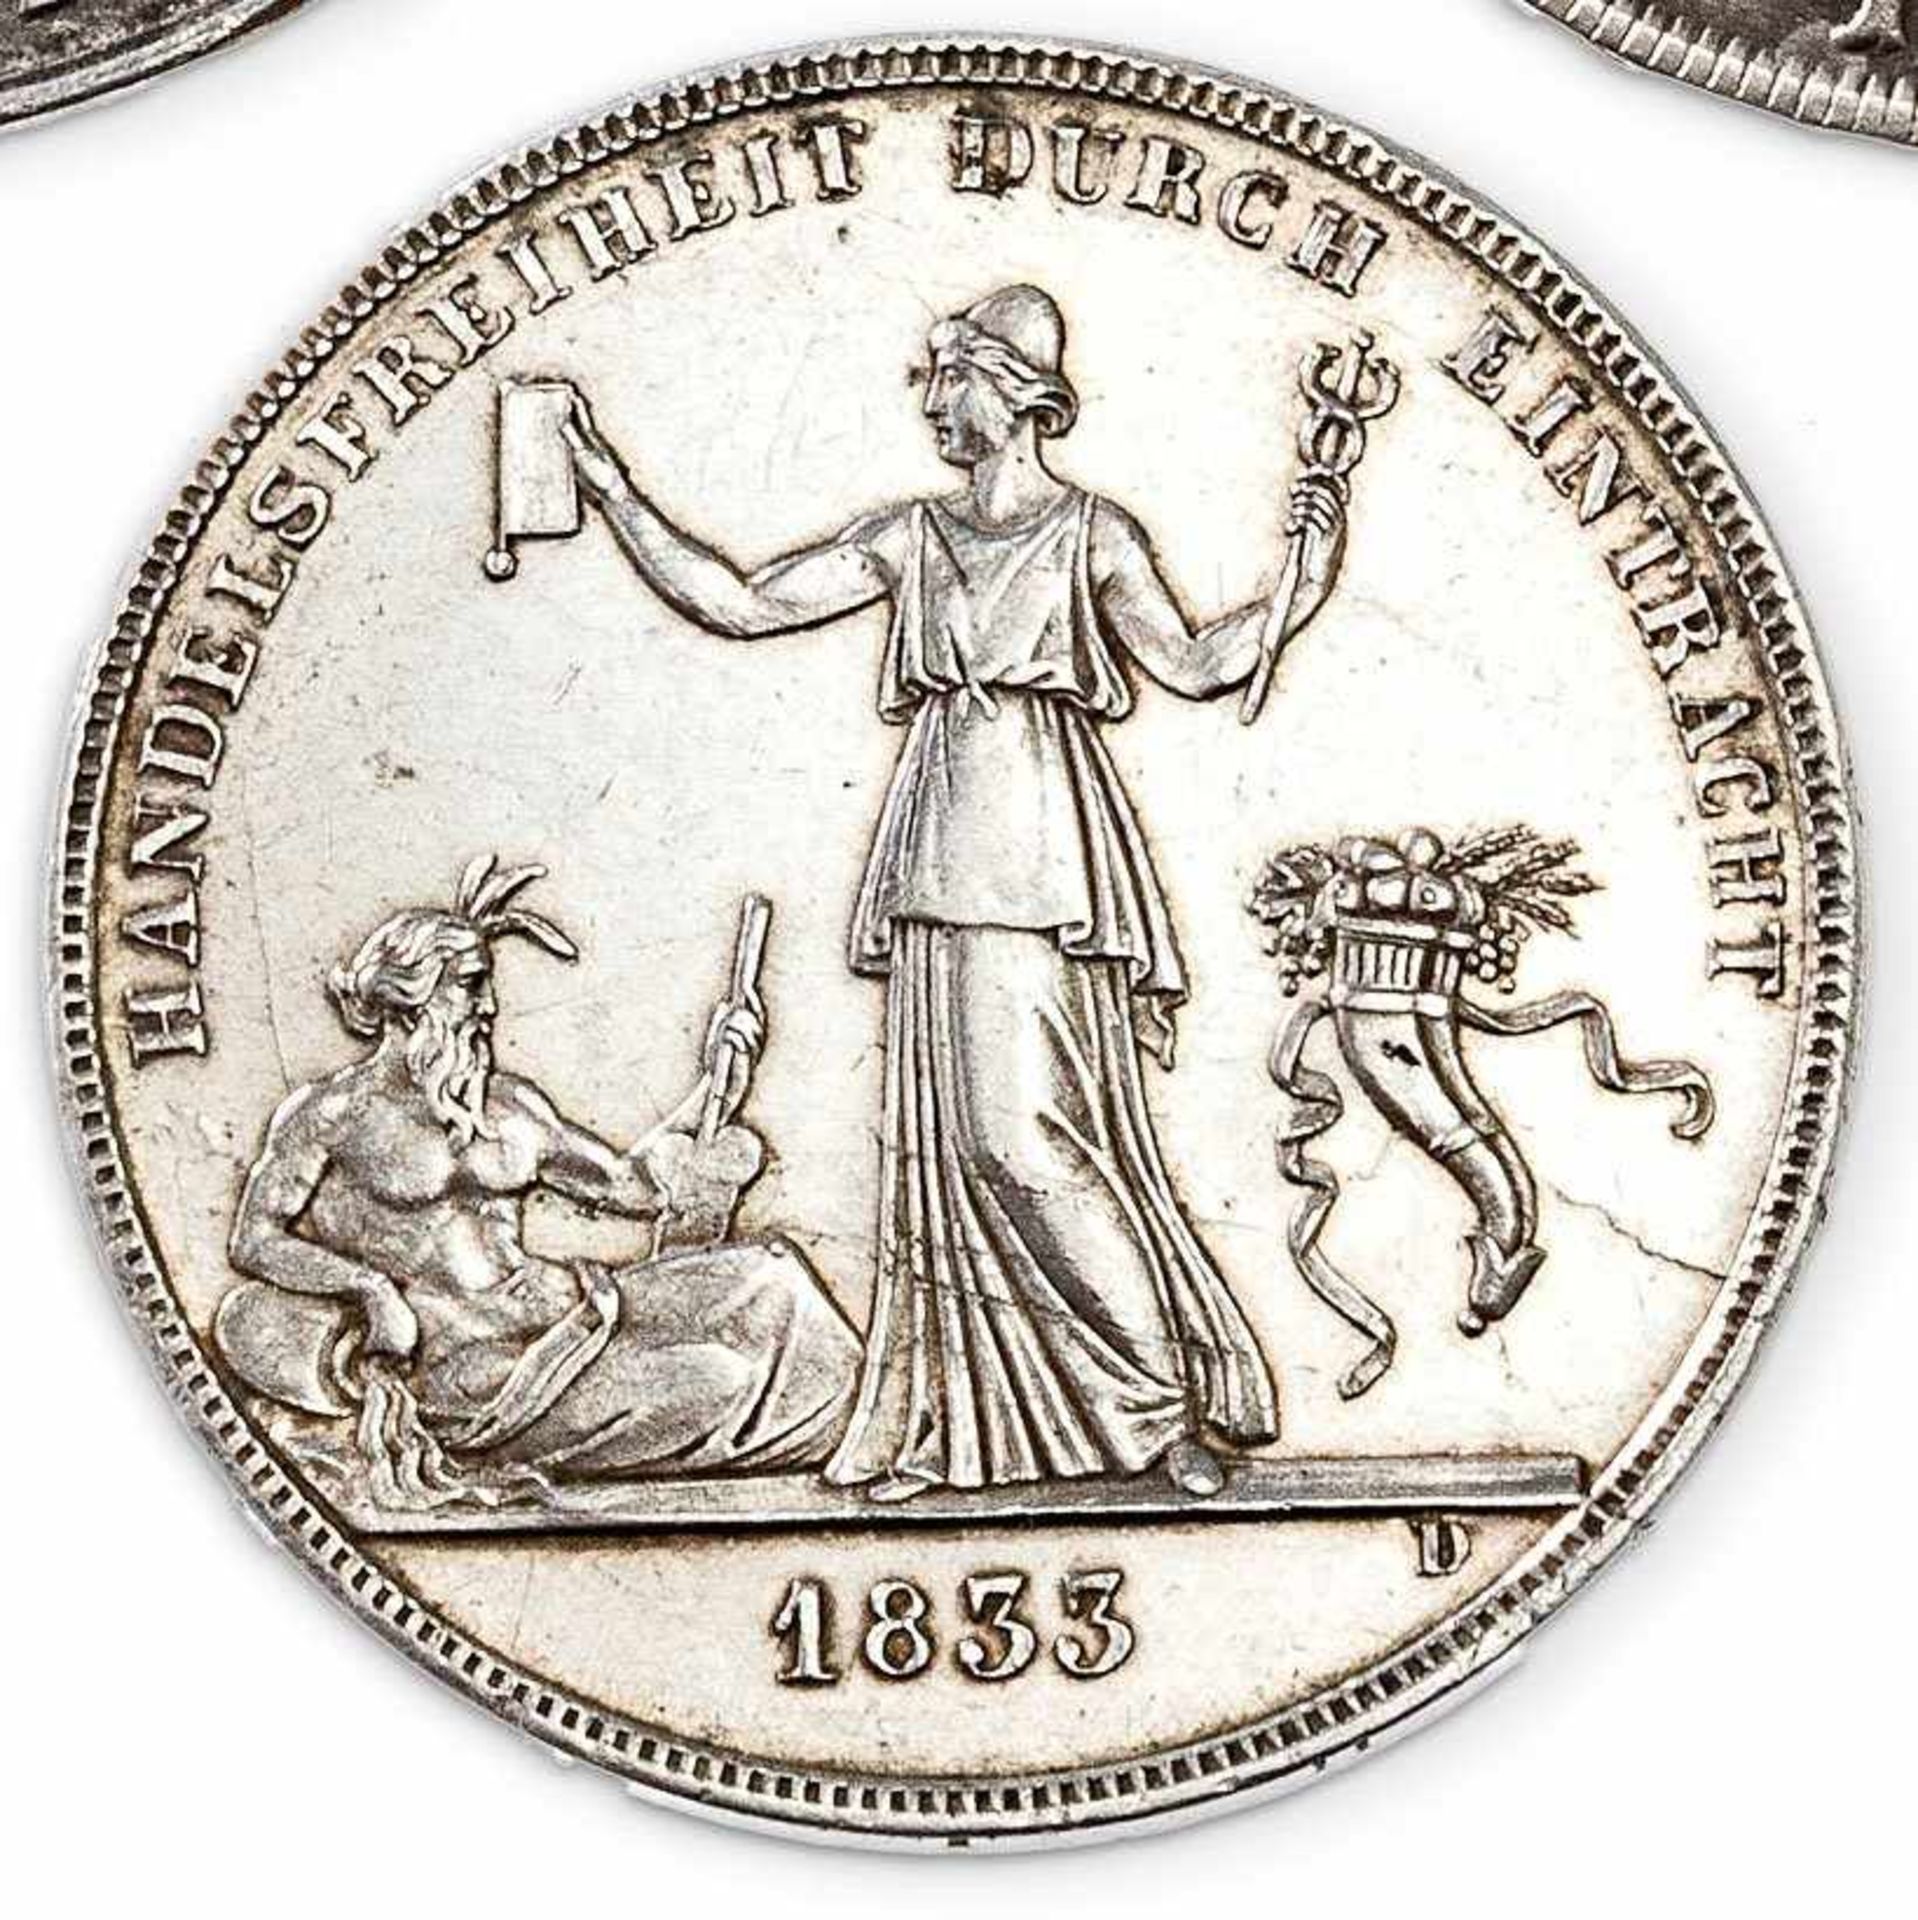 Silberner Kronenthaler 1833Handelsfreiheit durch Eintracht. Revers: König Wilhelm von Württemberg (